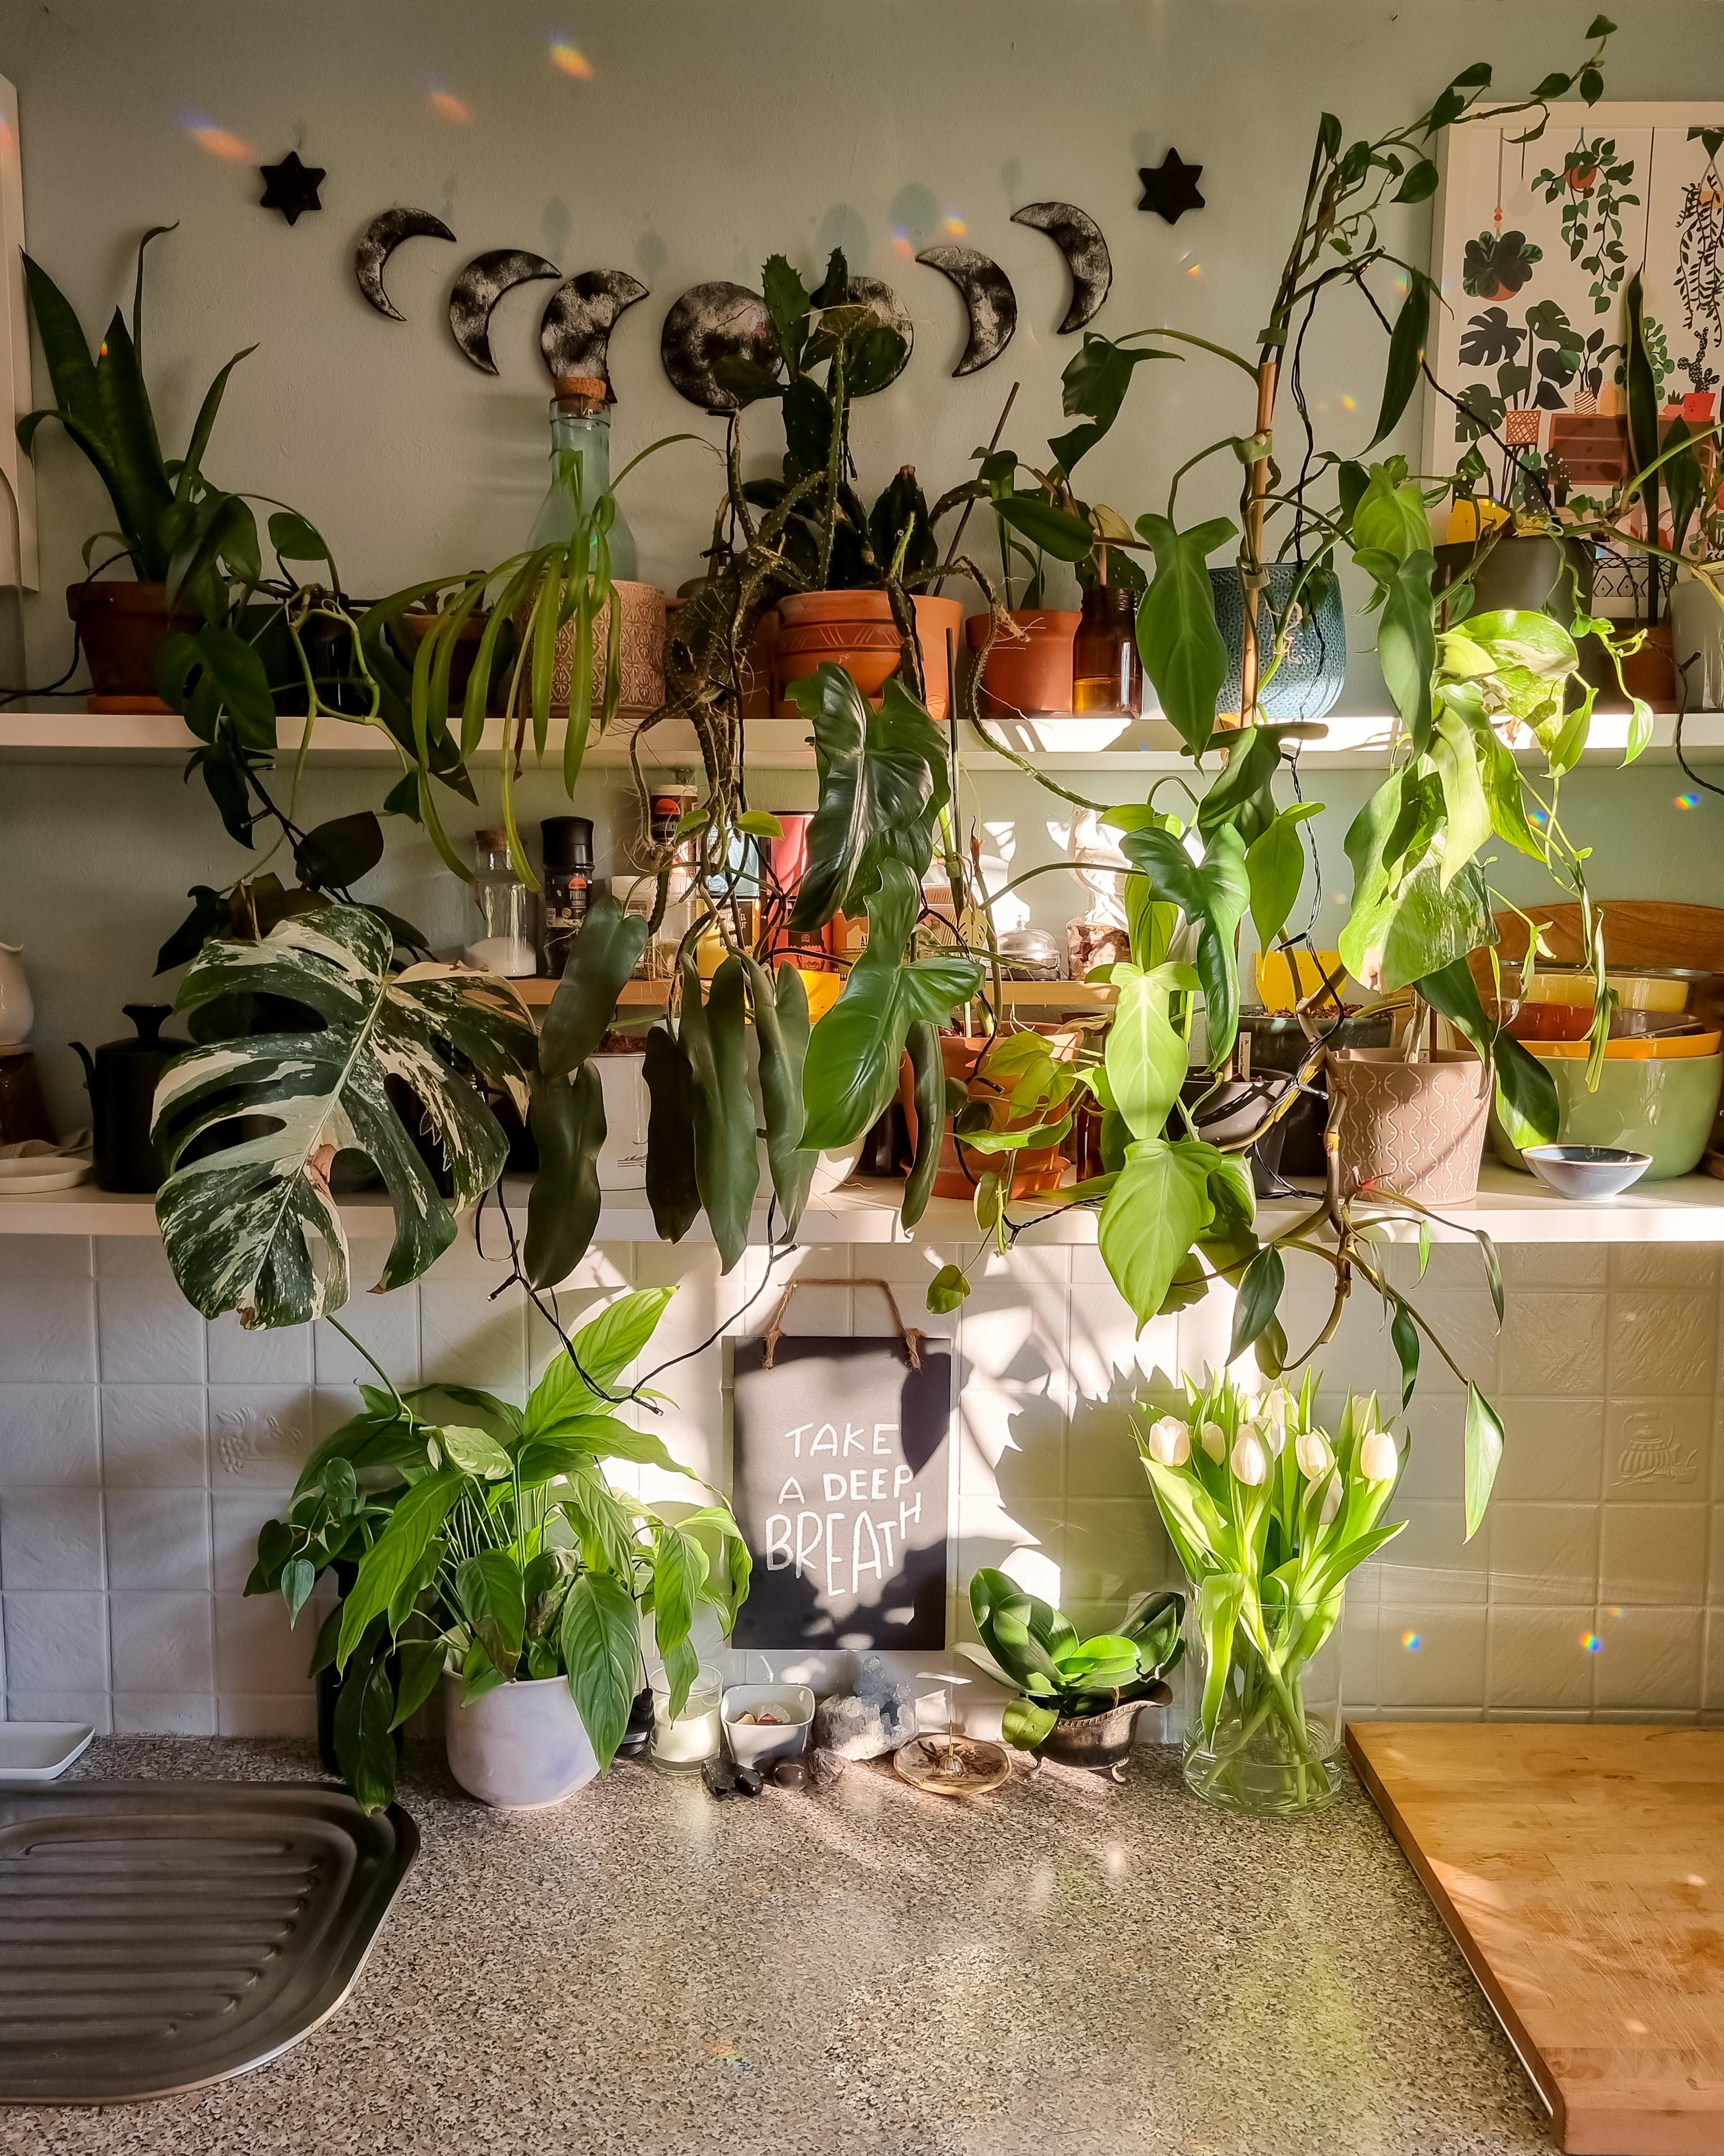 Sonntag ✌🏼🌿 #Küche #Pflanzen #Regal #Keramik #Geschirr #übertopf #Vase #Poster #Galerie #Girlande #Mondgirlande 